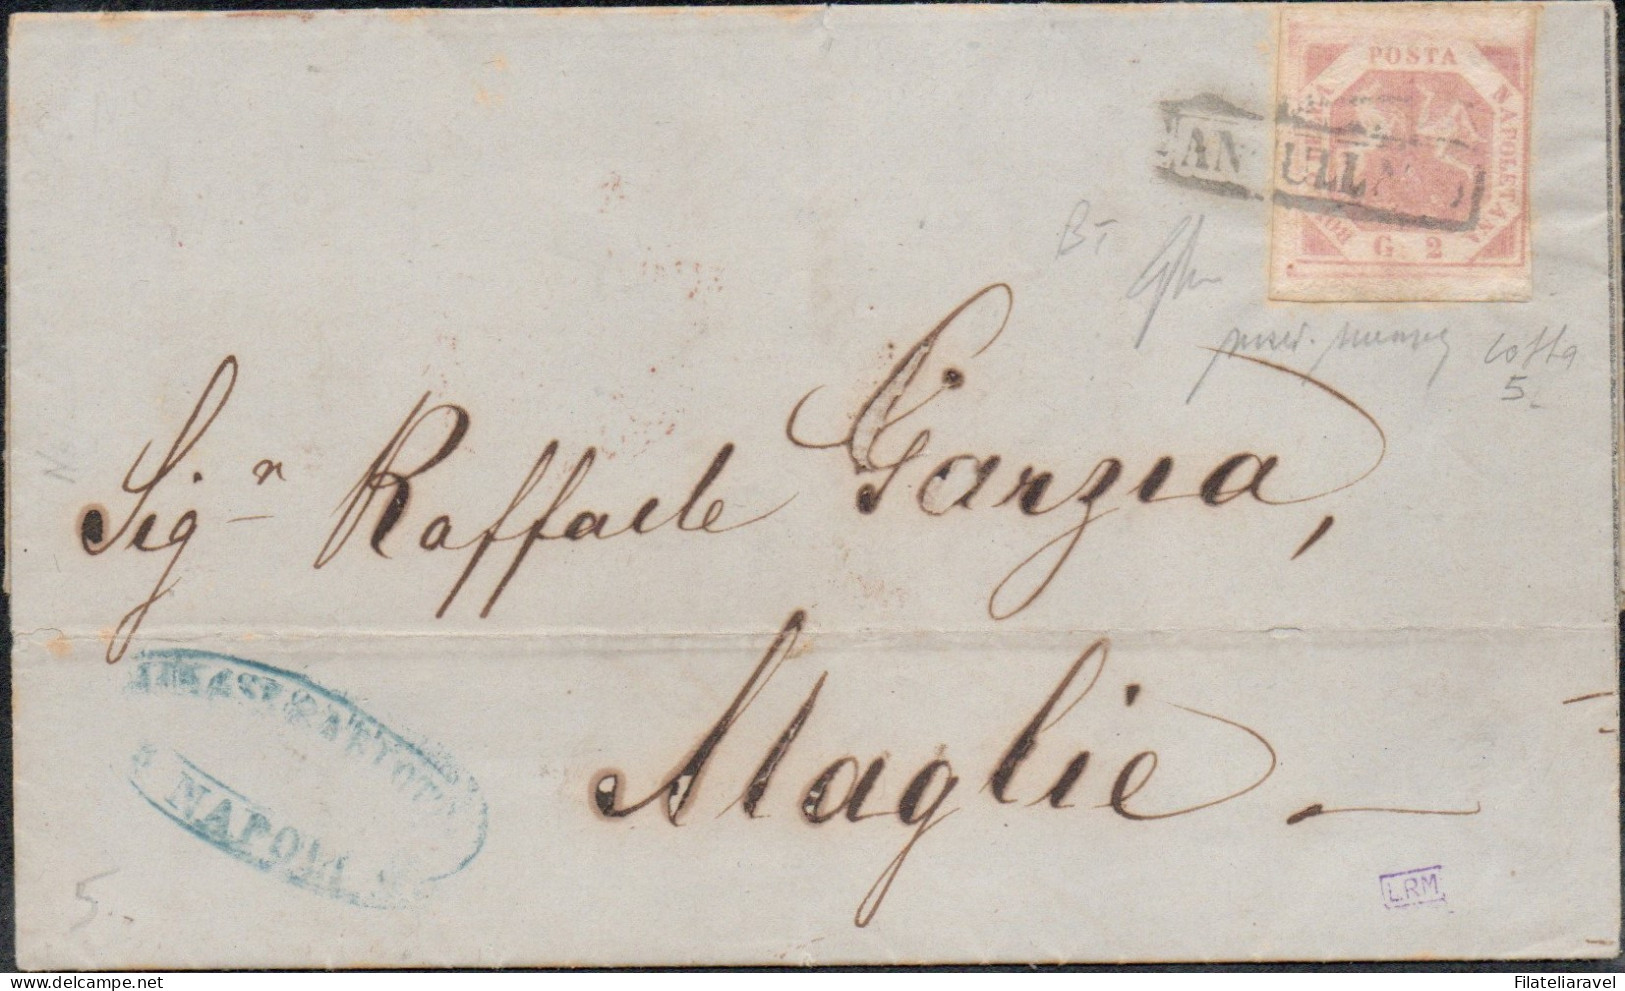 Ltr 1858 -  Napoli - Lettera Da Napoli A Maglie, 2 Grana (5a) Filigrana "BT" Completo E Capovolto RARA, Cert. Merone - Neapel